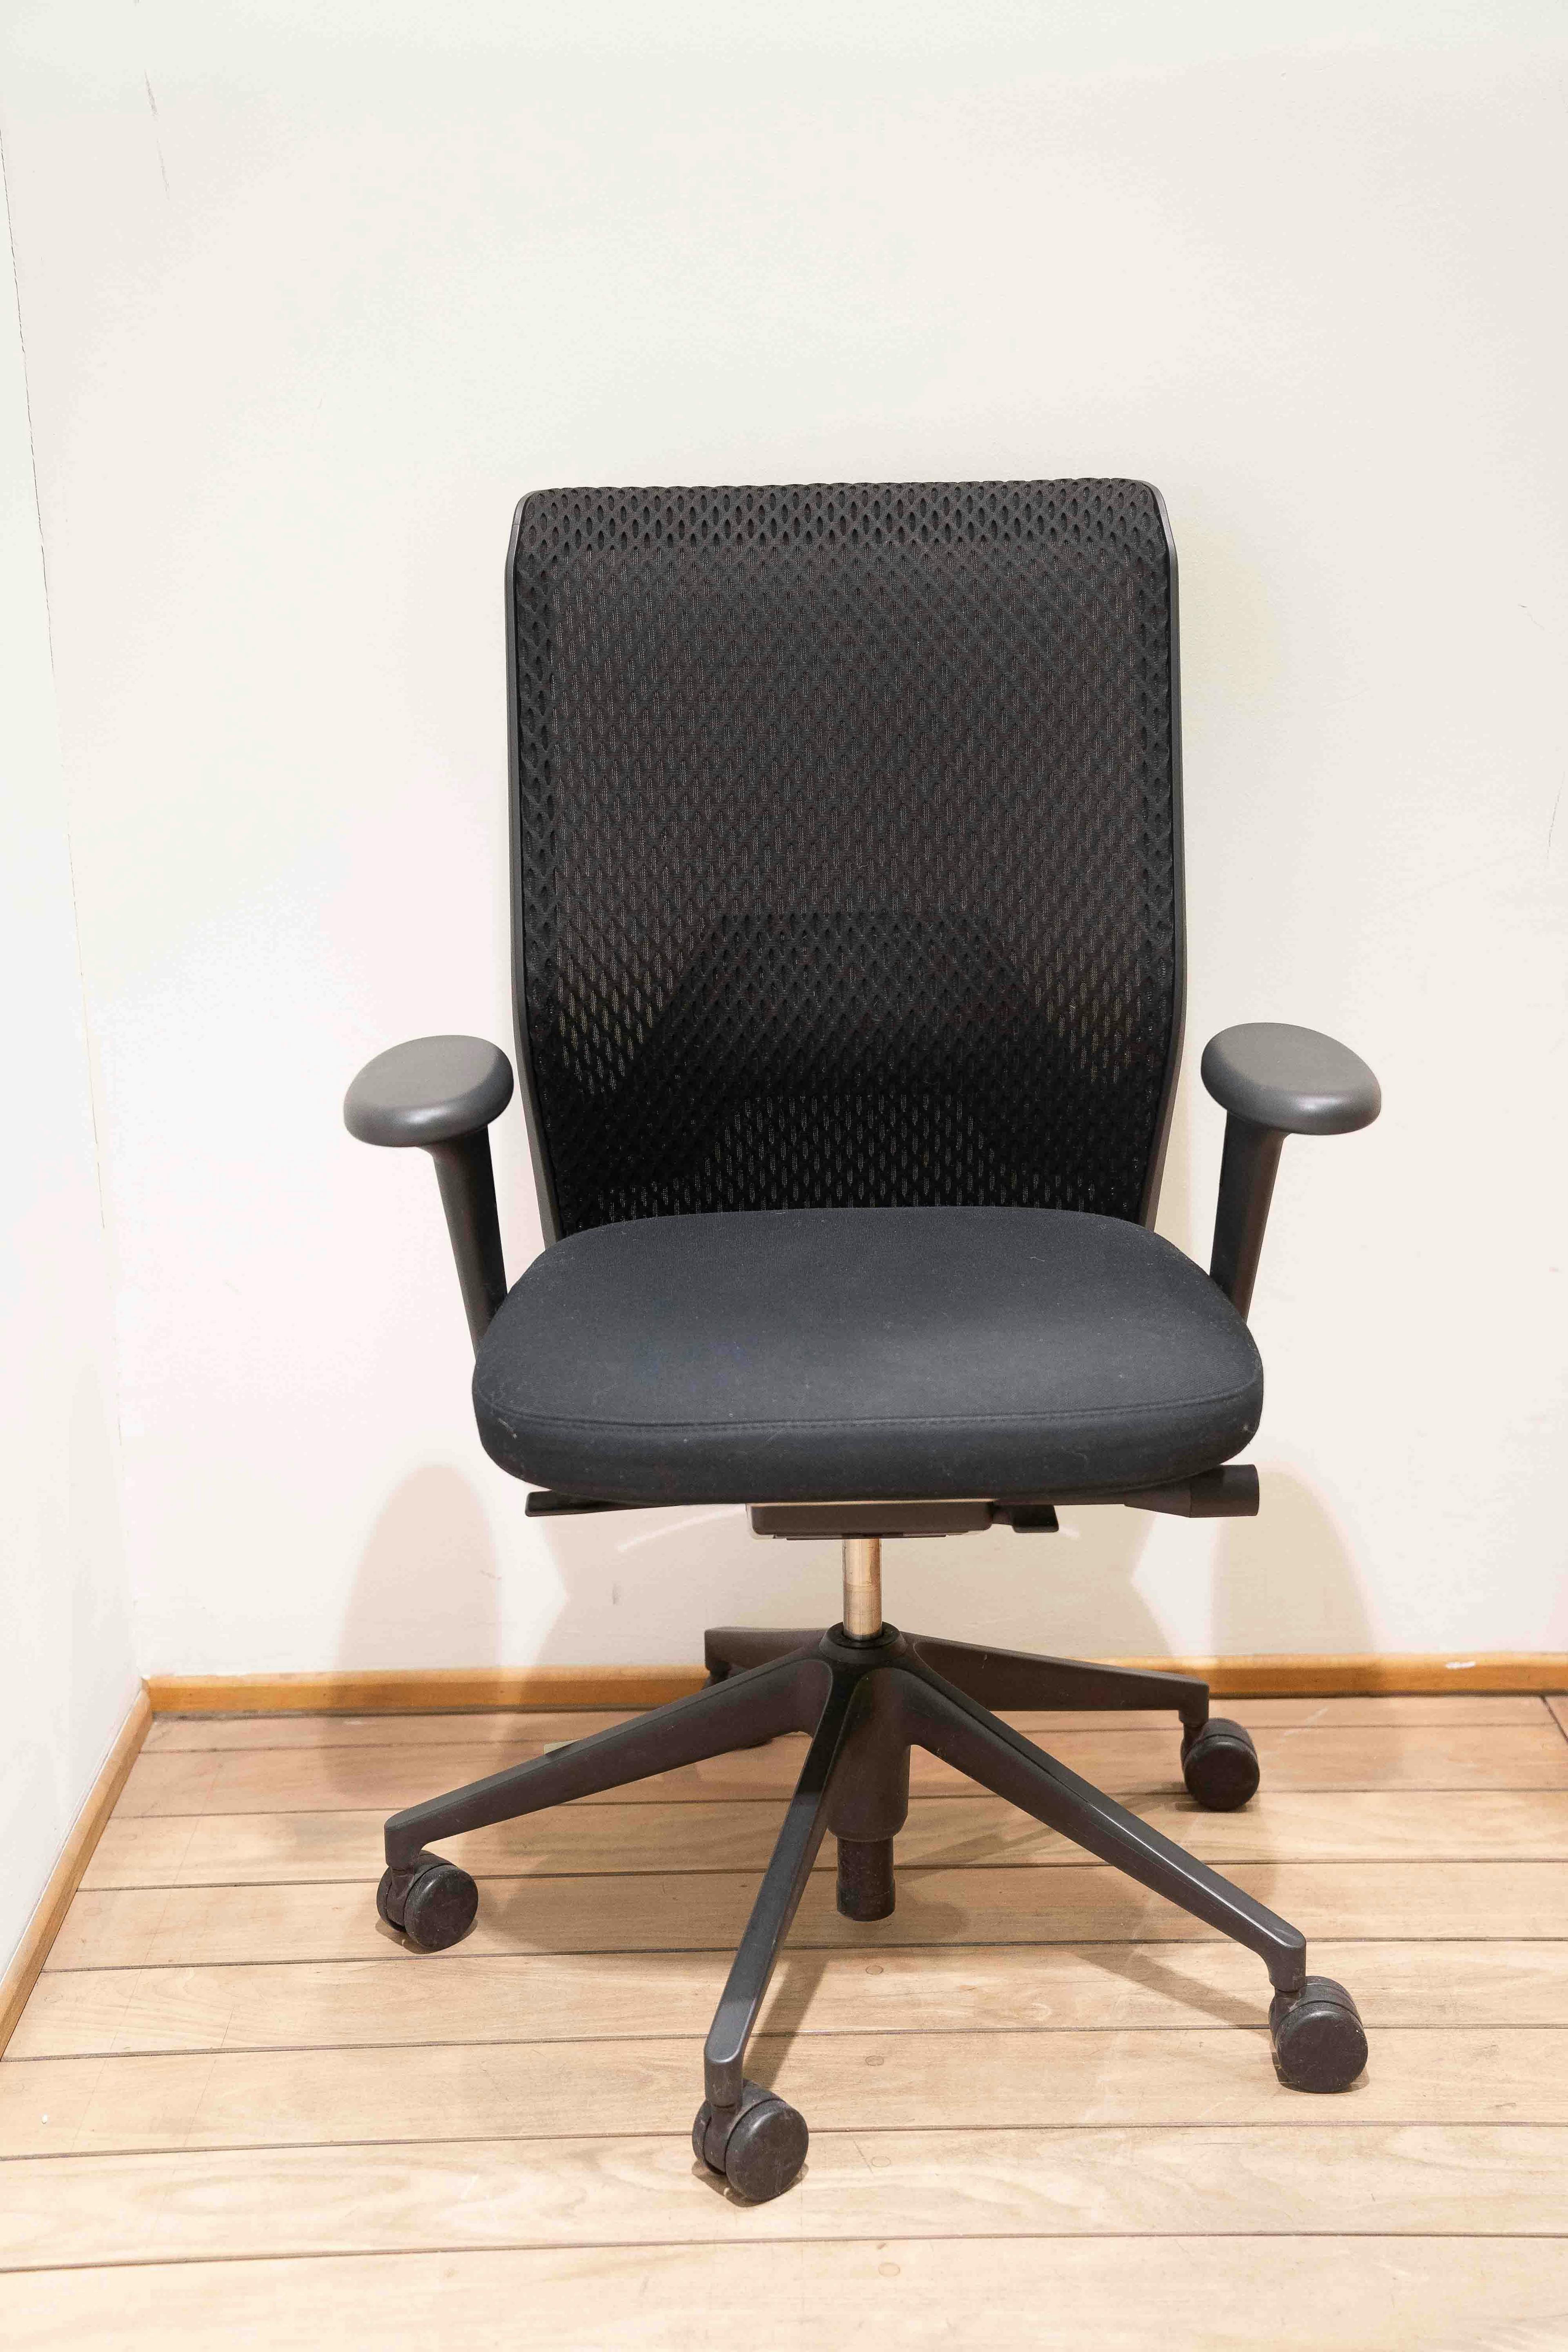 Chaise de bureau en tissu pas cher - Achat neuf et occasion à prix réduit